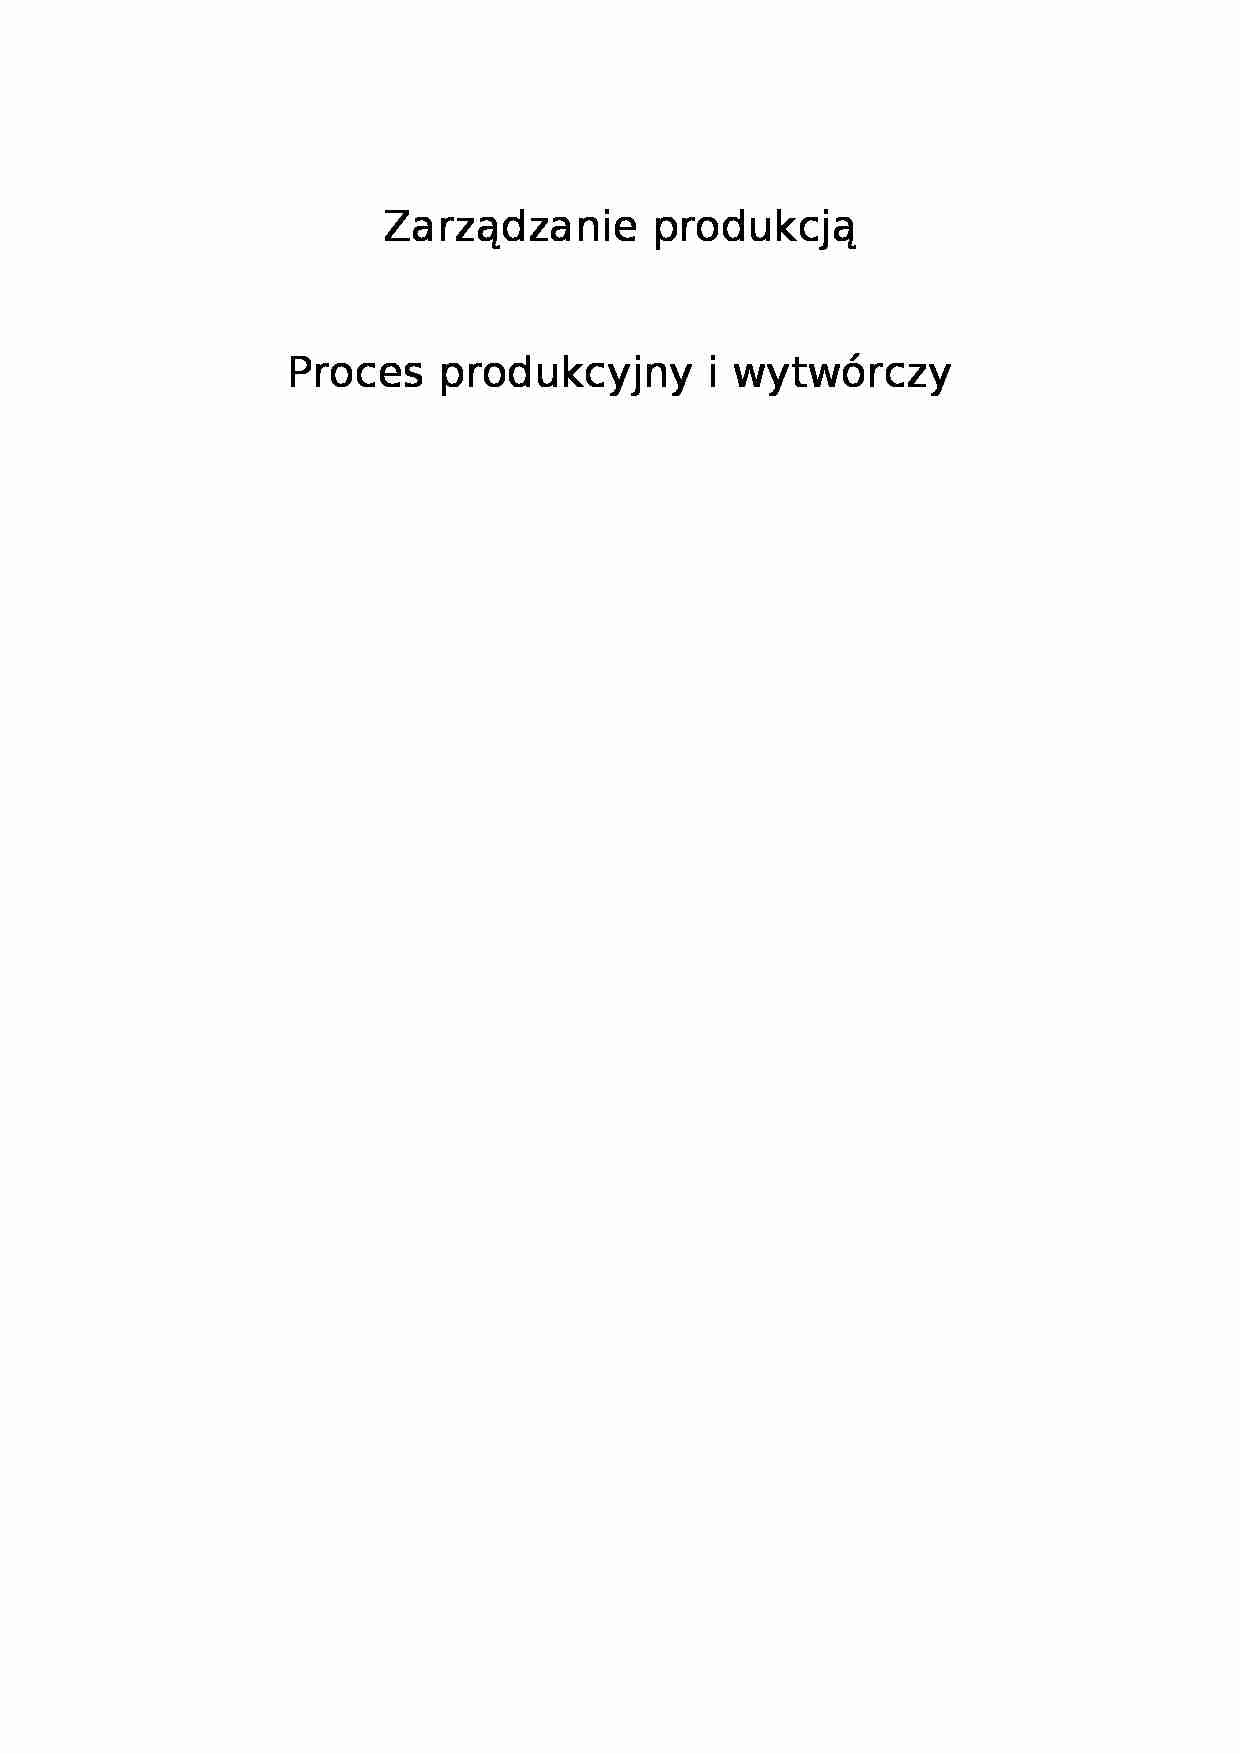 Proces produkcyjny i wytwórczy - Utylizacja - strona 1